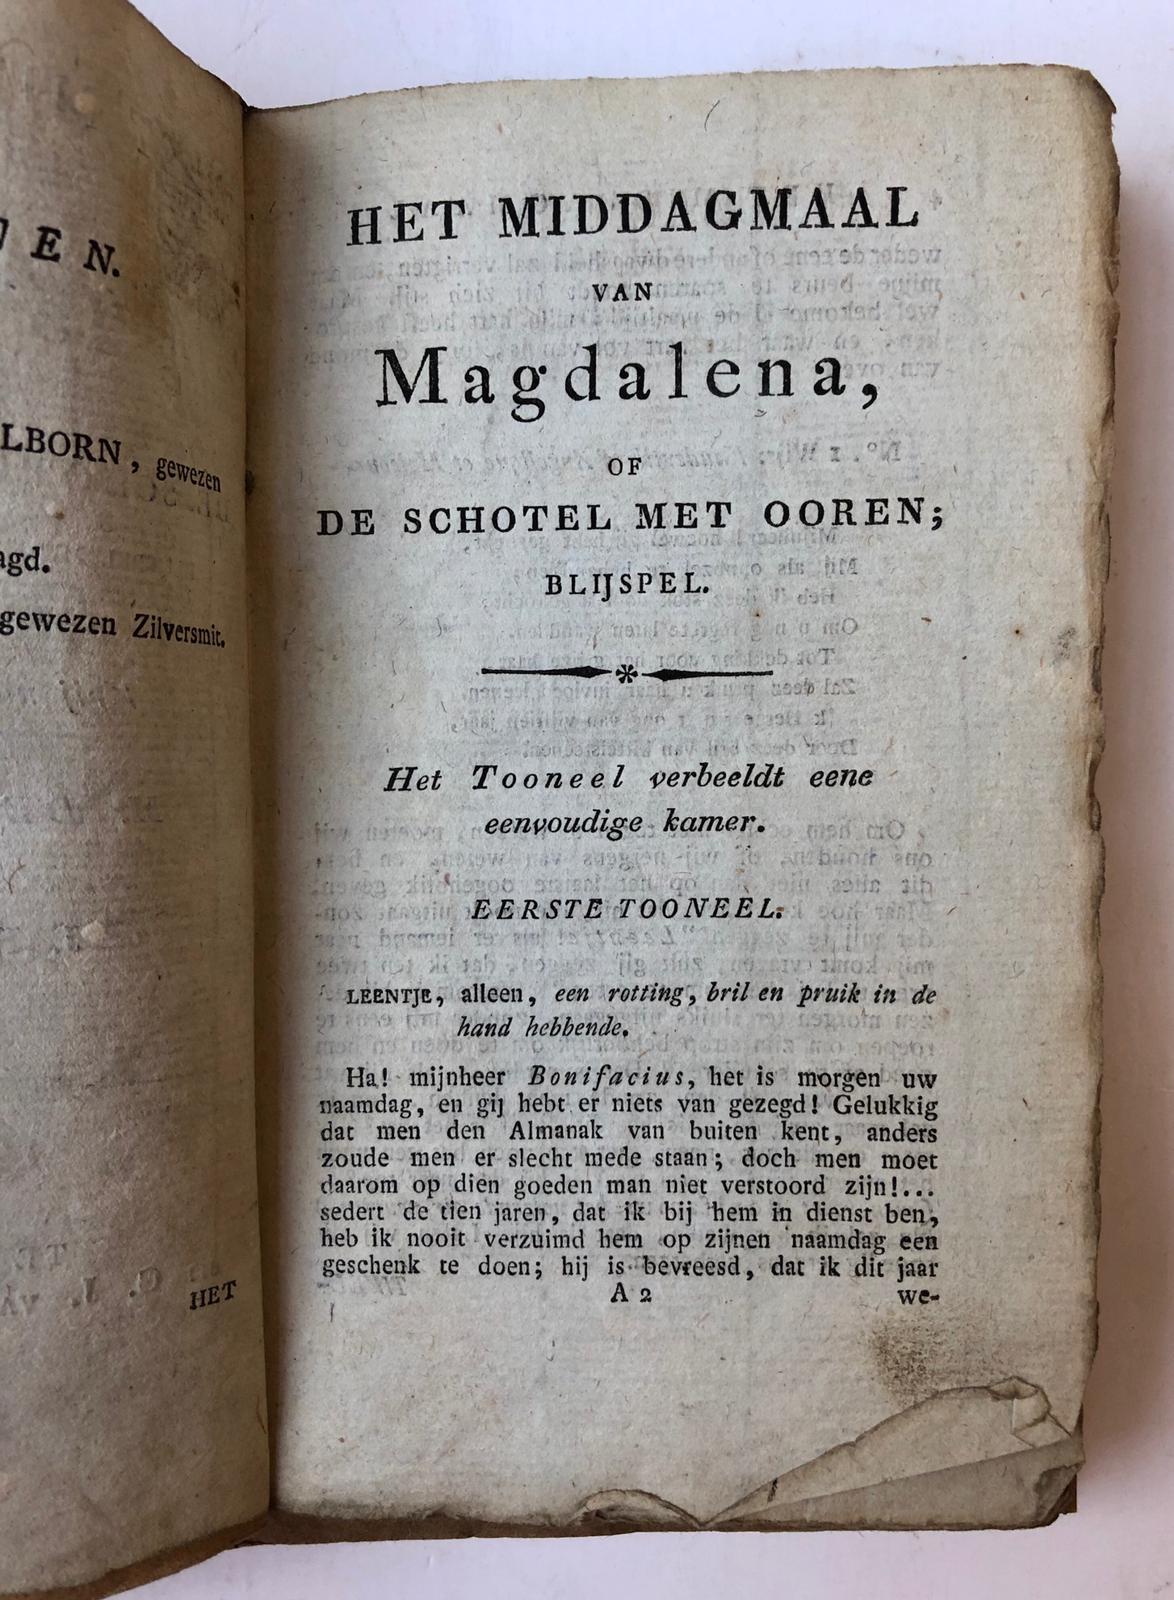 [Theater, The Hague] Het middagmaal van Magdalena, of De schotel met ooren; blijspel met zang (vaudeville) in een bedrijf. Vertaald uit het Frans. Nijmegen, C.J. van Goor en zoon, 1820.